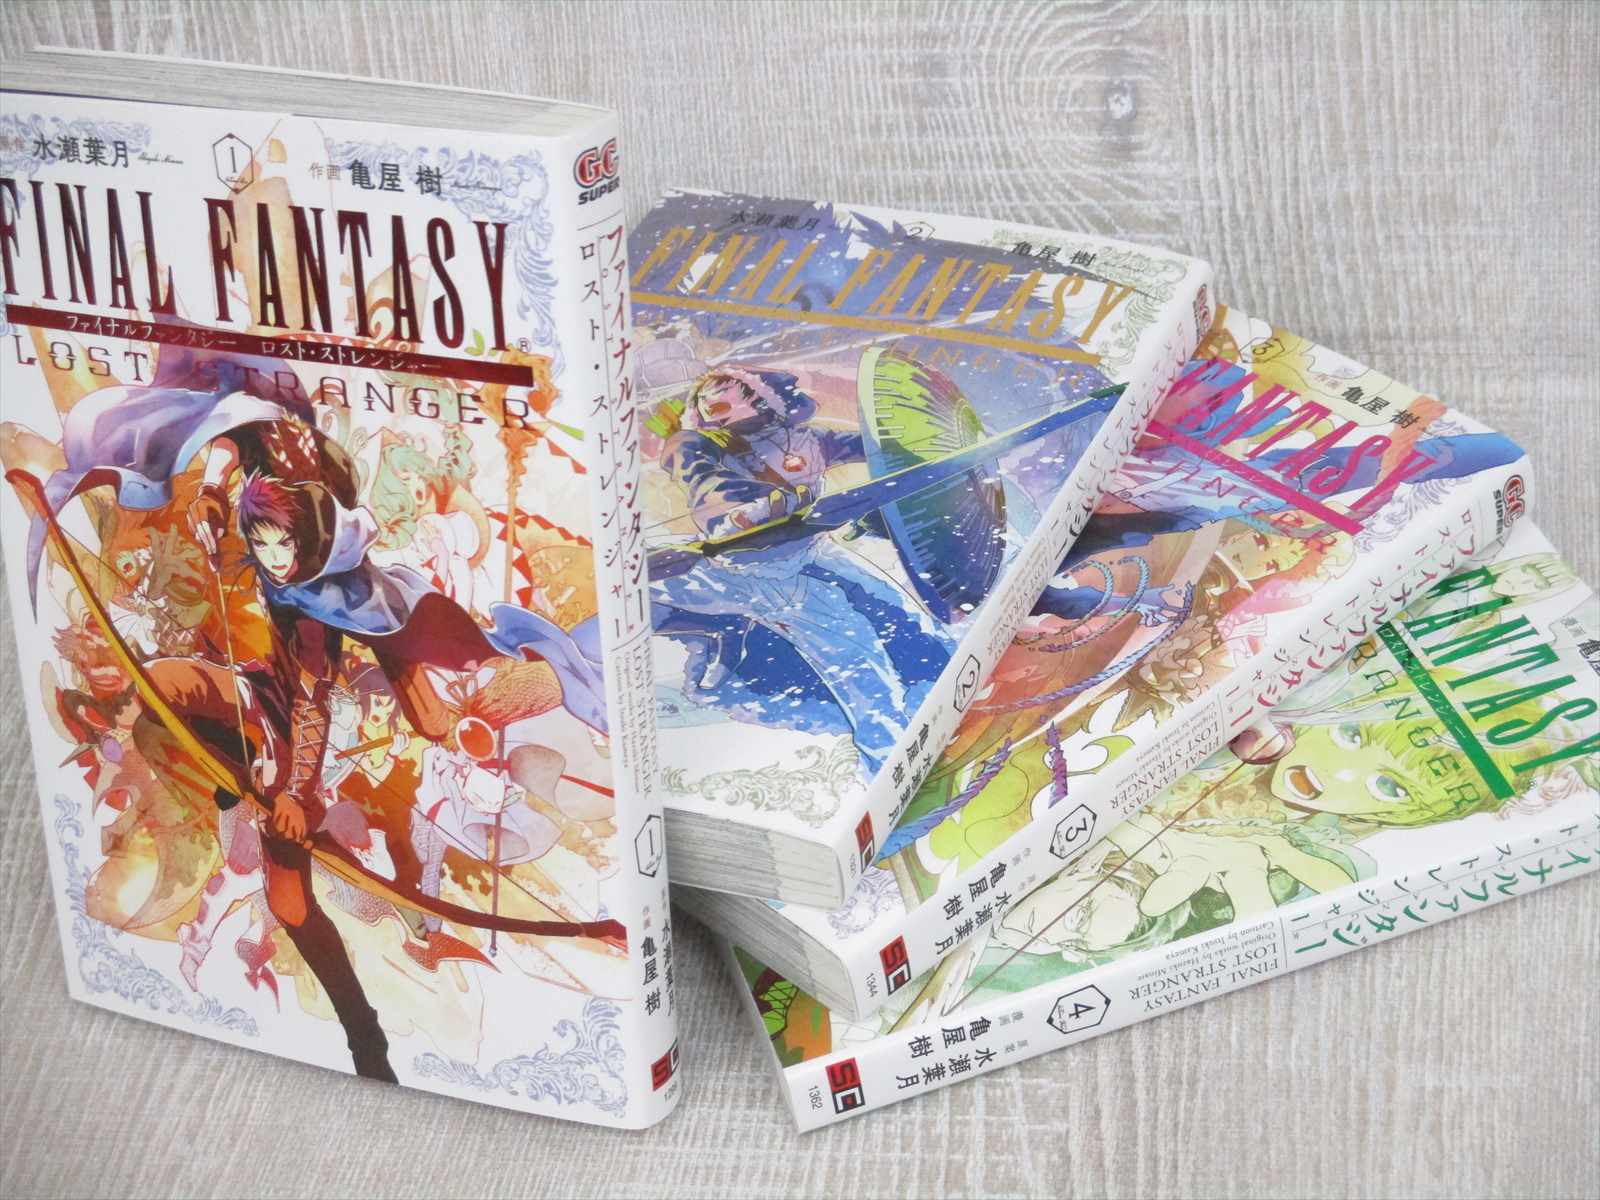 Final Fantasy Lost Stranger Manga Comic Set 1 4 Itsuki Kameya Japan Book Se Ebay